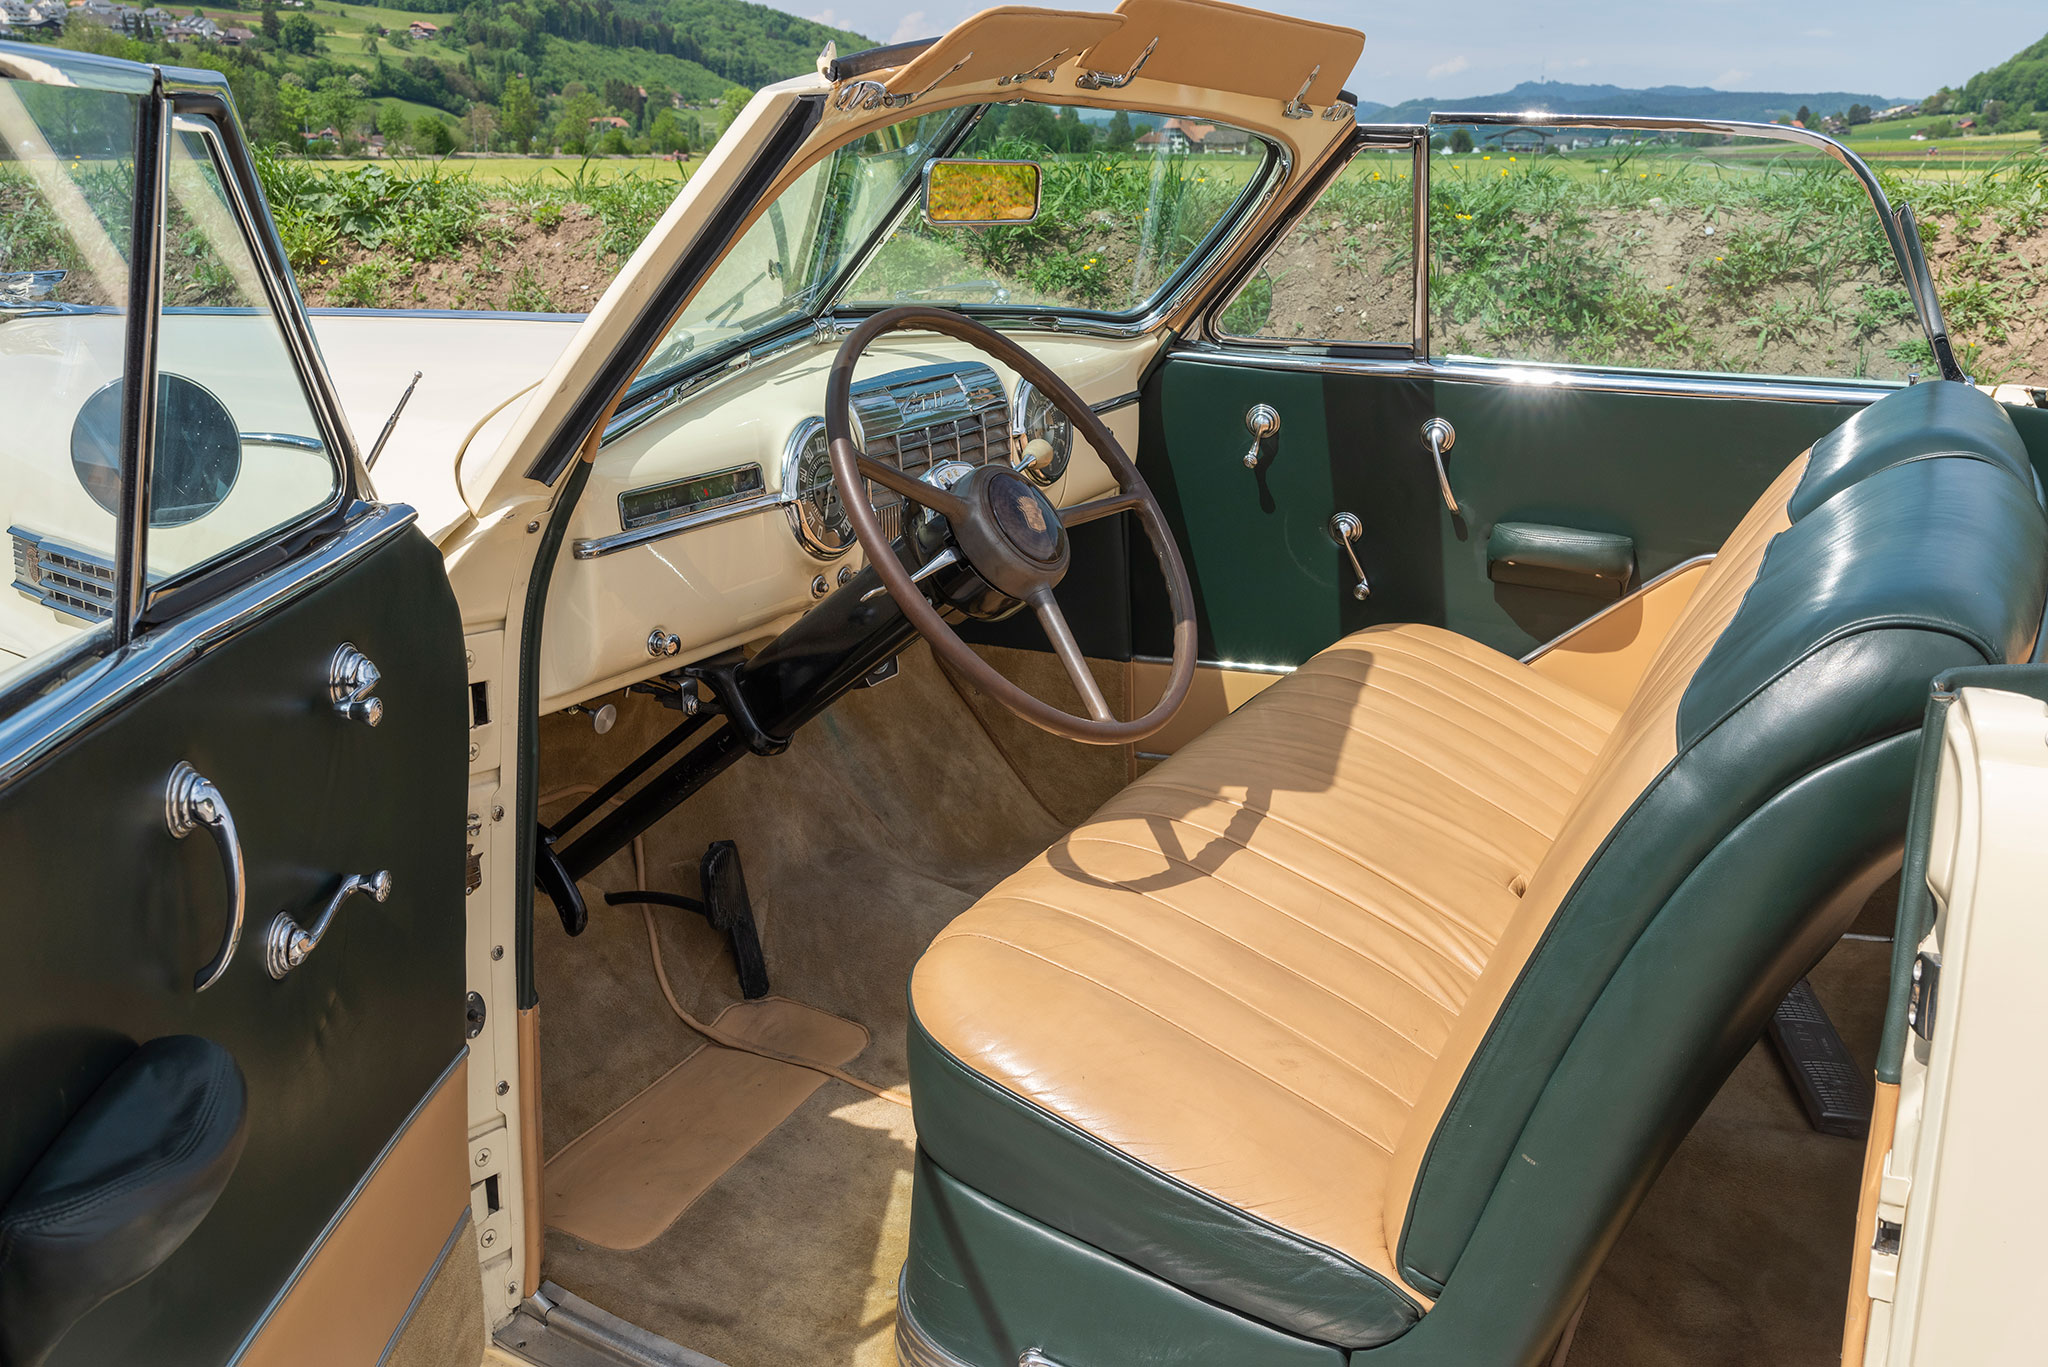 1954 Cadiilac Série 62 - L'intérieur vert et beige est en harmonie avec la carrosserie jaune paille - Enchères au Swiss Classic World.